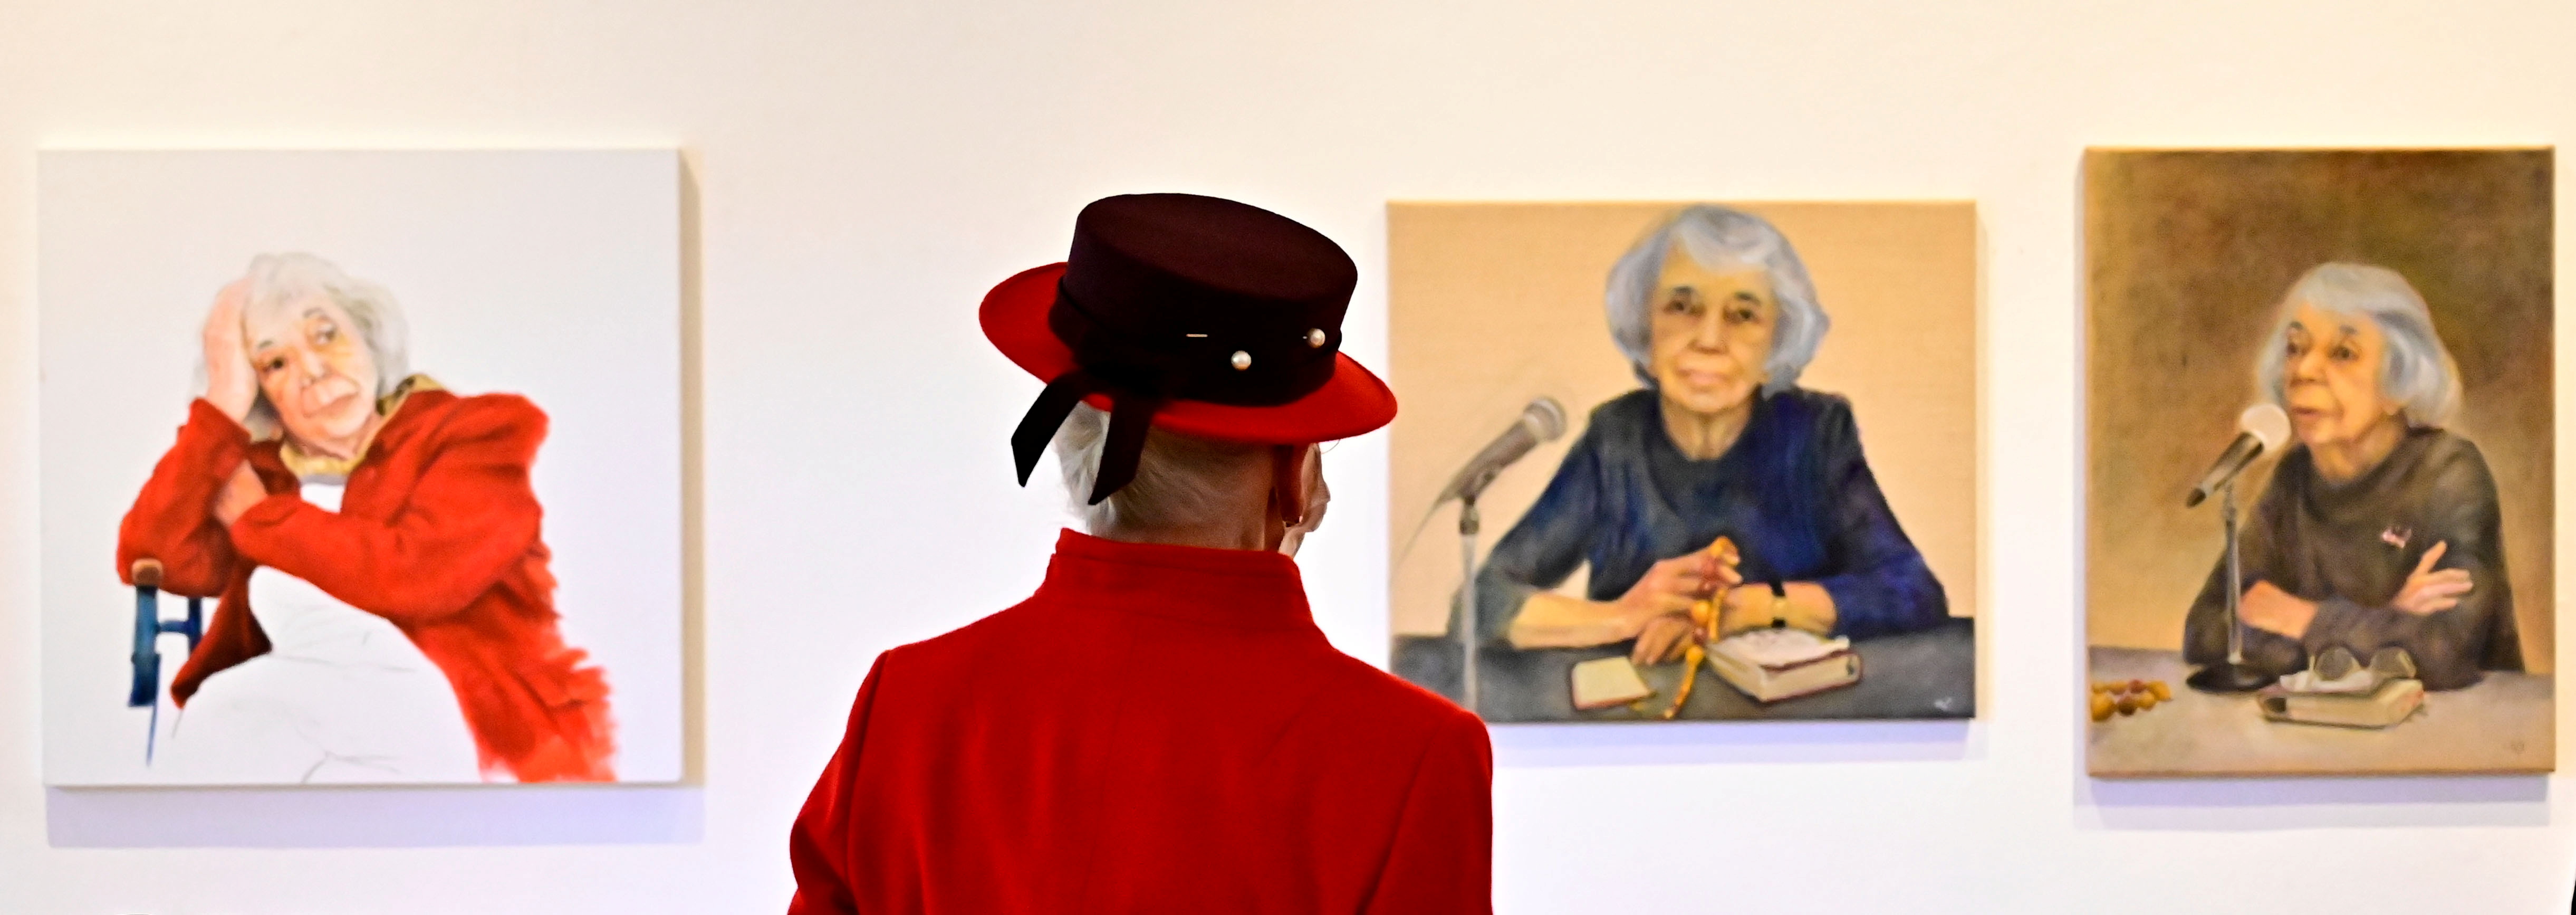 La reina Margarita de Dinamarca mira los retratos de la sobreviviente alemana del Holocausto Margot Friedlander mientras visita la Literaturhaus (casa de la literatura) en Berlín, Alemania. Tobias Schwarz/Pool vía REUTERS